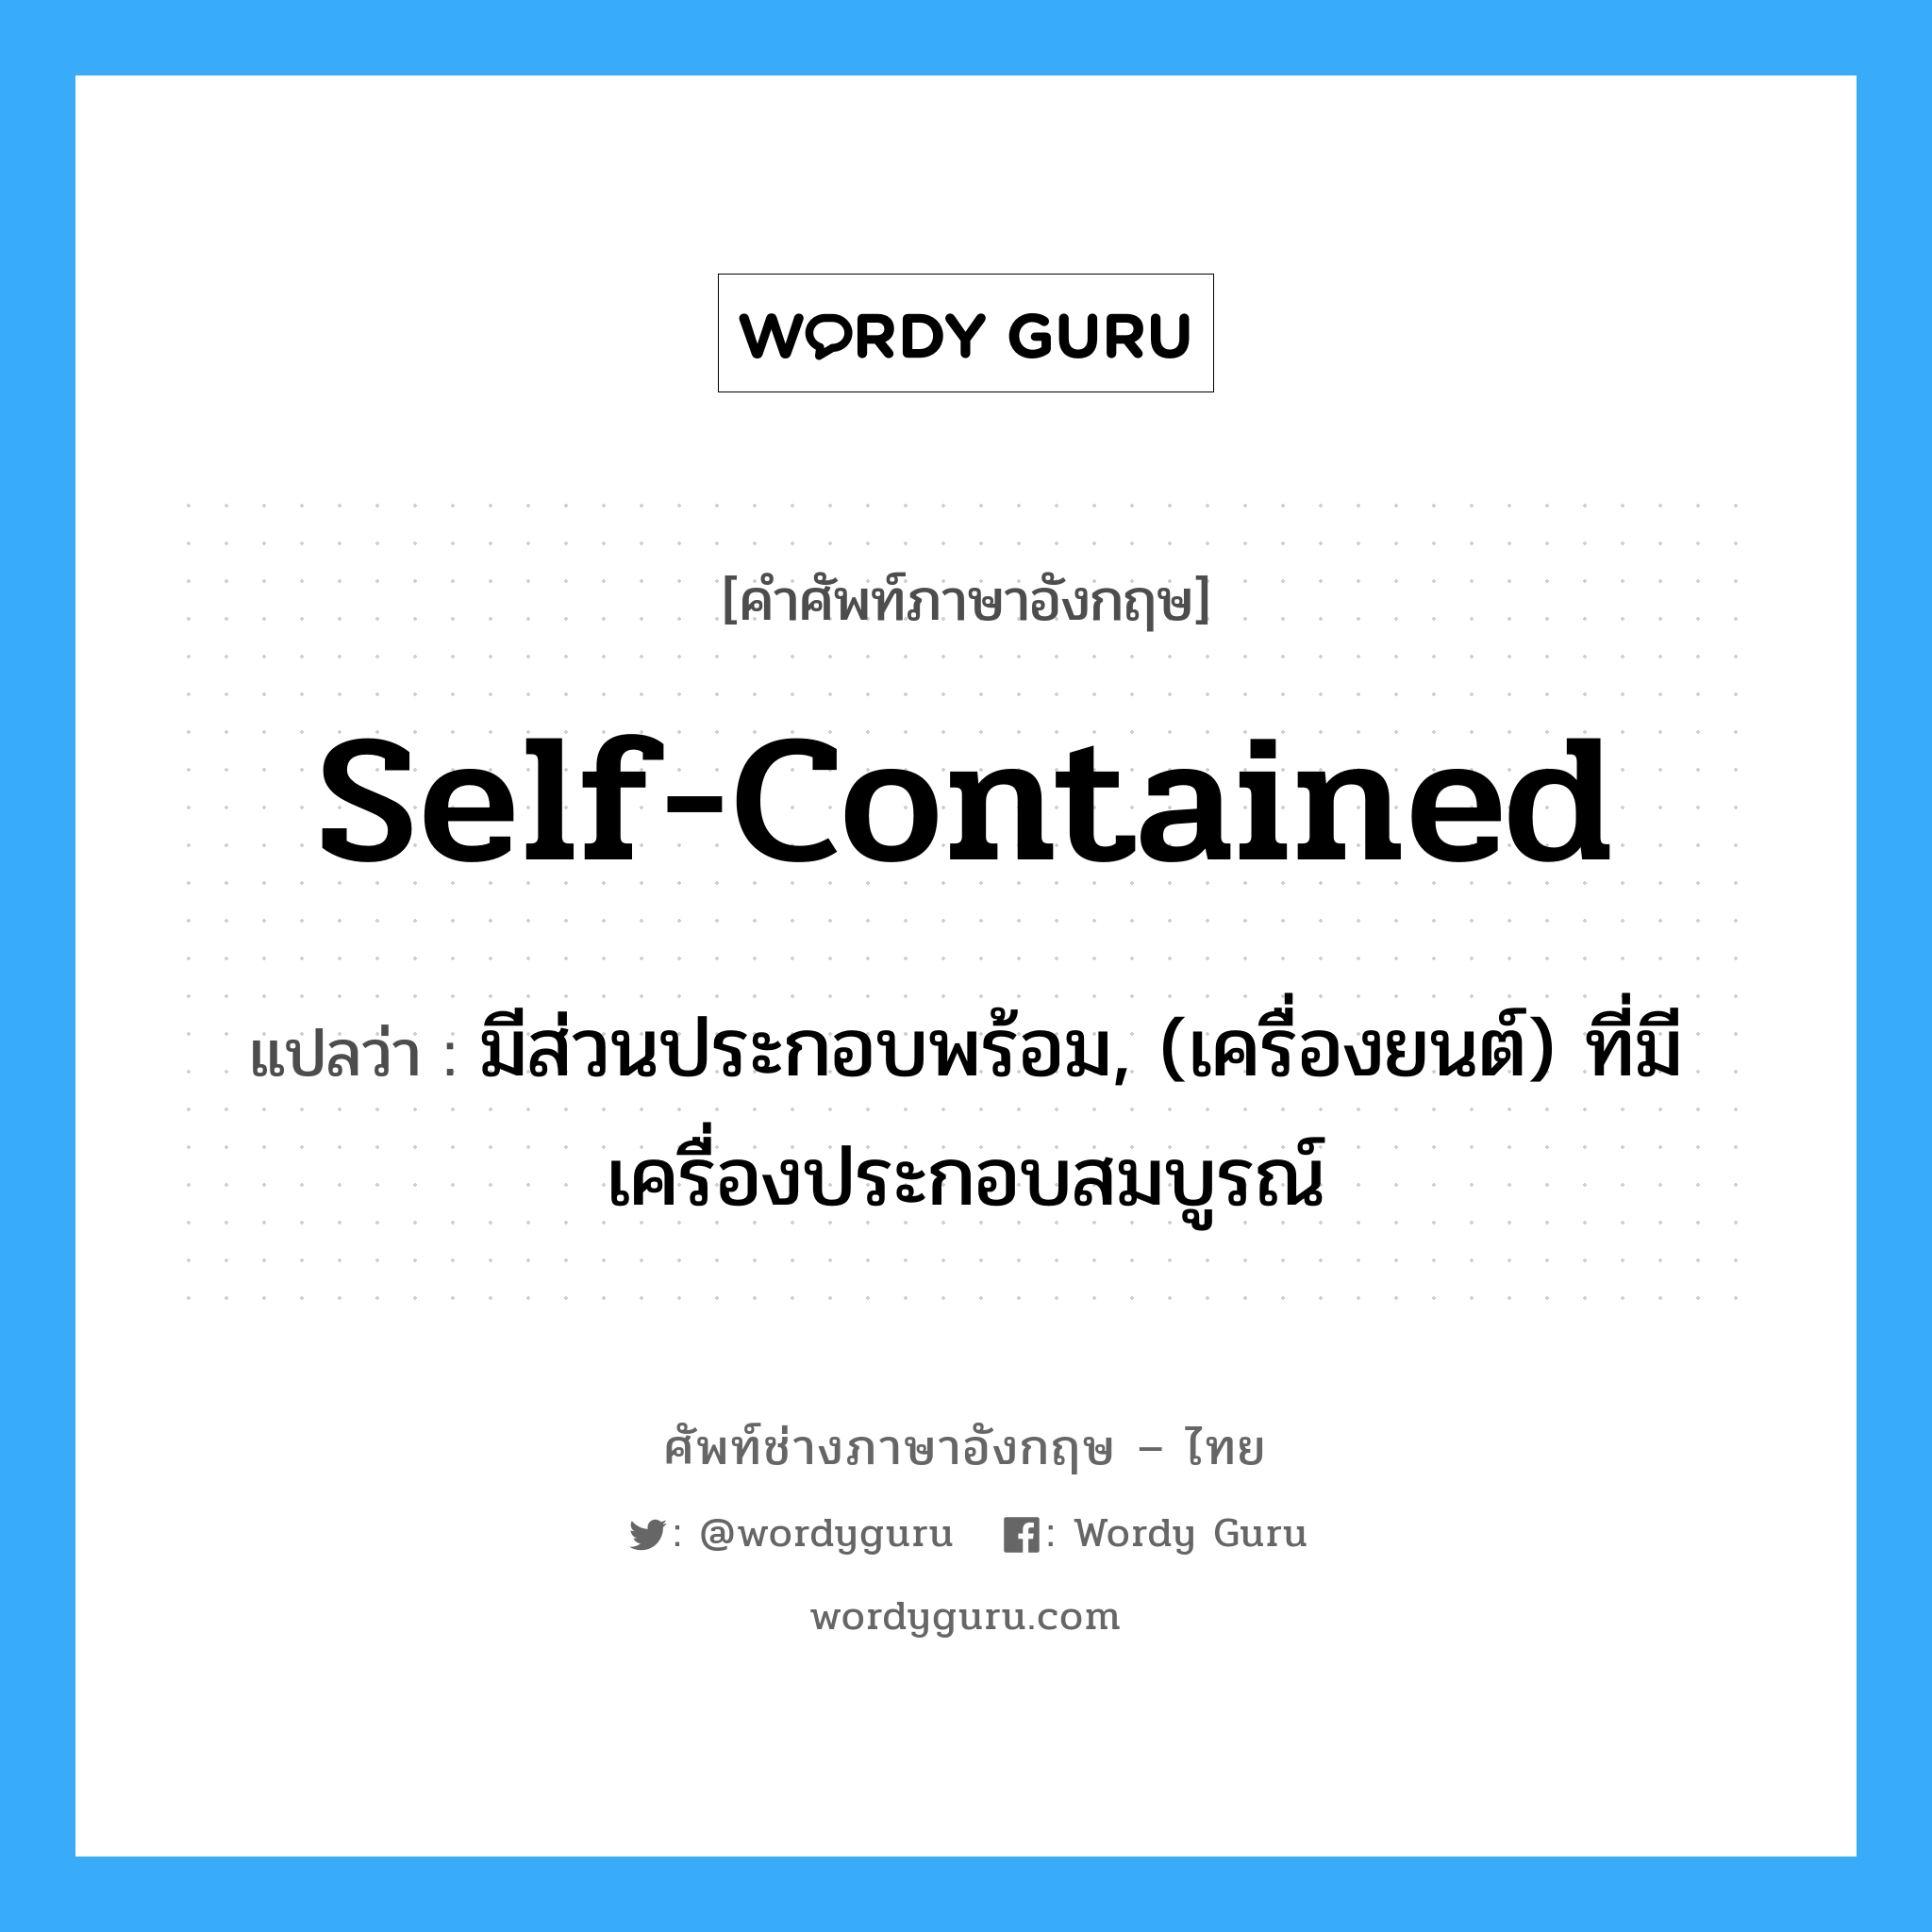 self-contained แปลว่า?, คำศัพท์ช่างภาษาอังกฤษ - ไทย self-contained คำศัพท์ภาษาอังกฤษ self-contained แปลว่า มีส่วนประกอบพร้อม, (เครื่องยนต์) ที่มีเครื่องประกอบสมบูรณ์